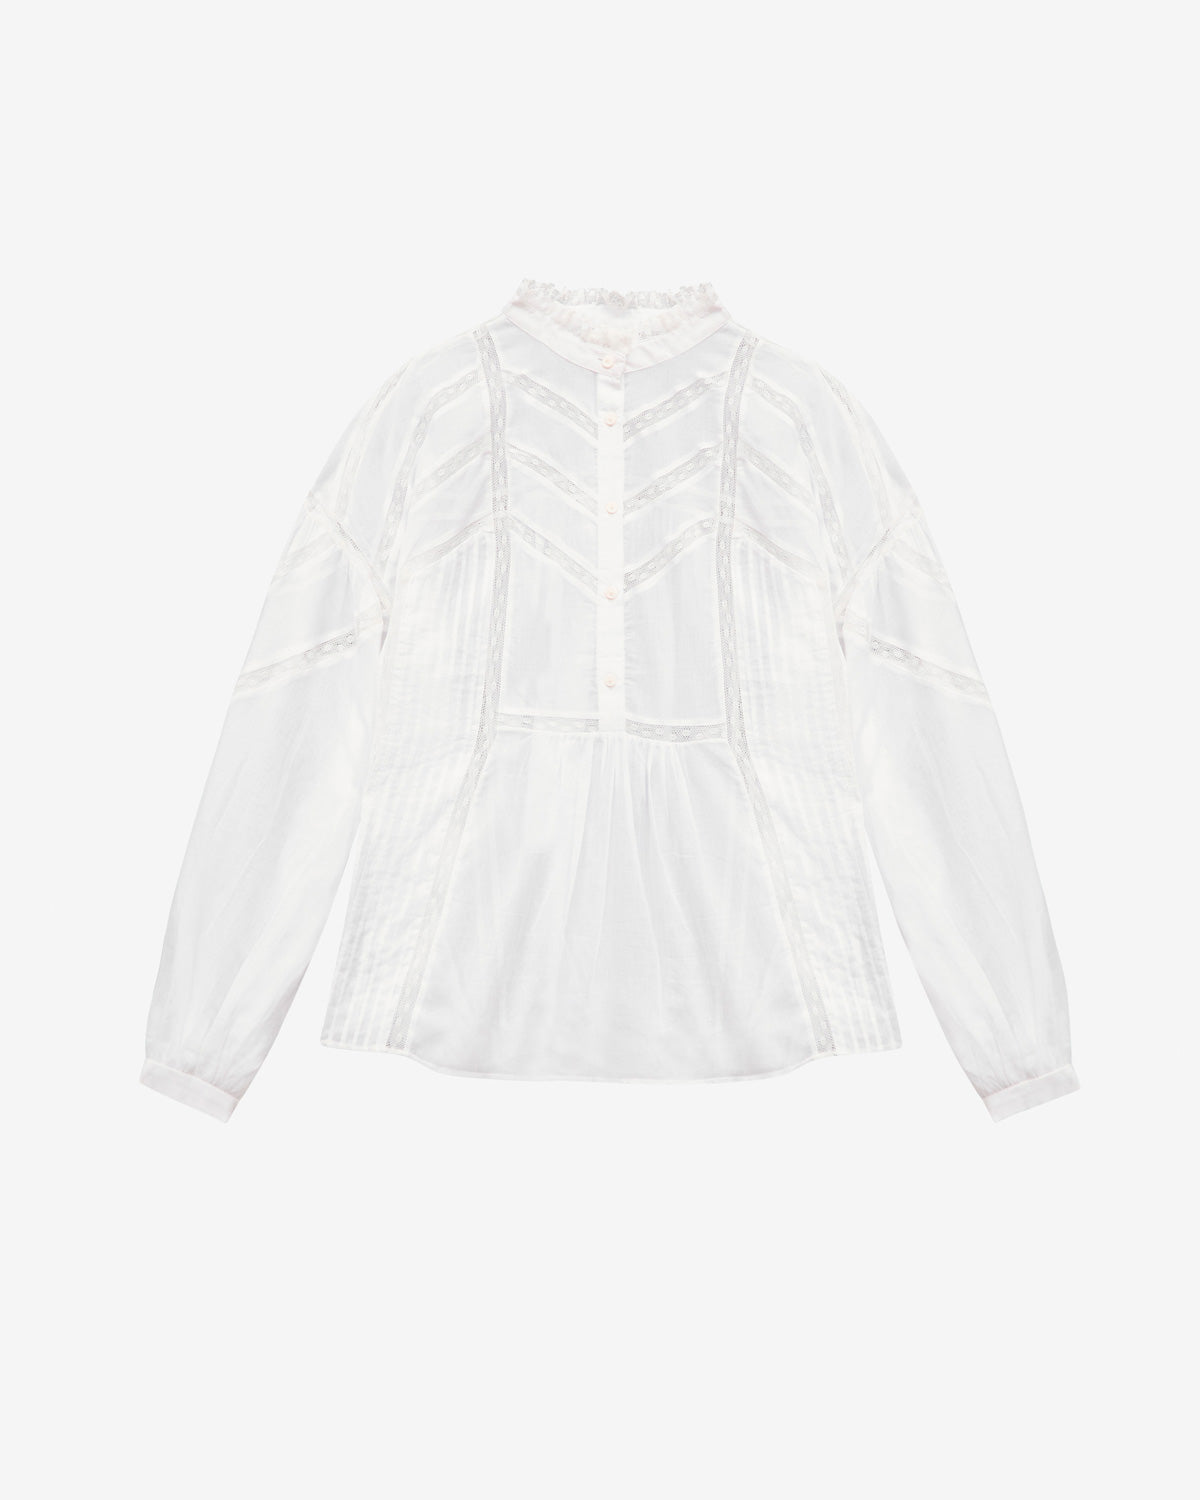 Gelma blouse Woman White 1